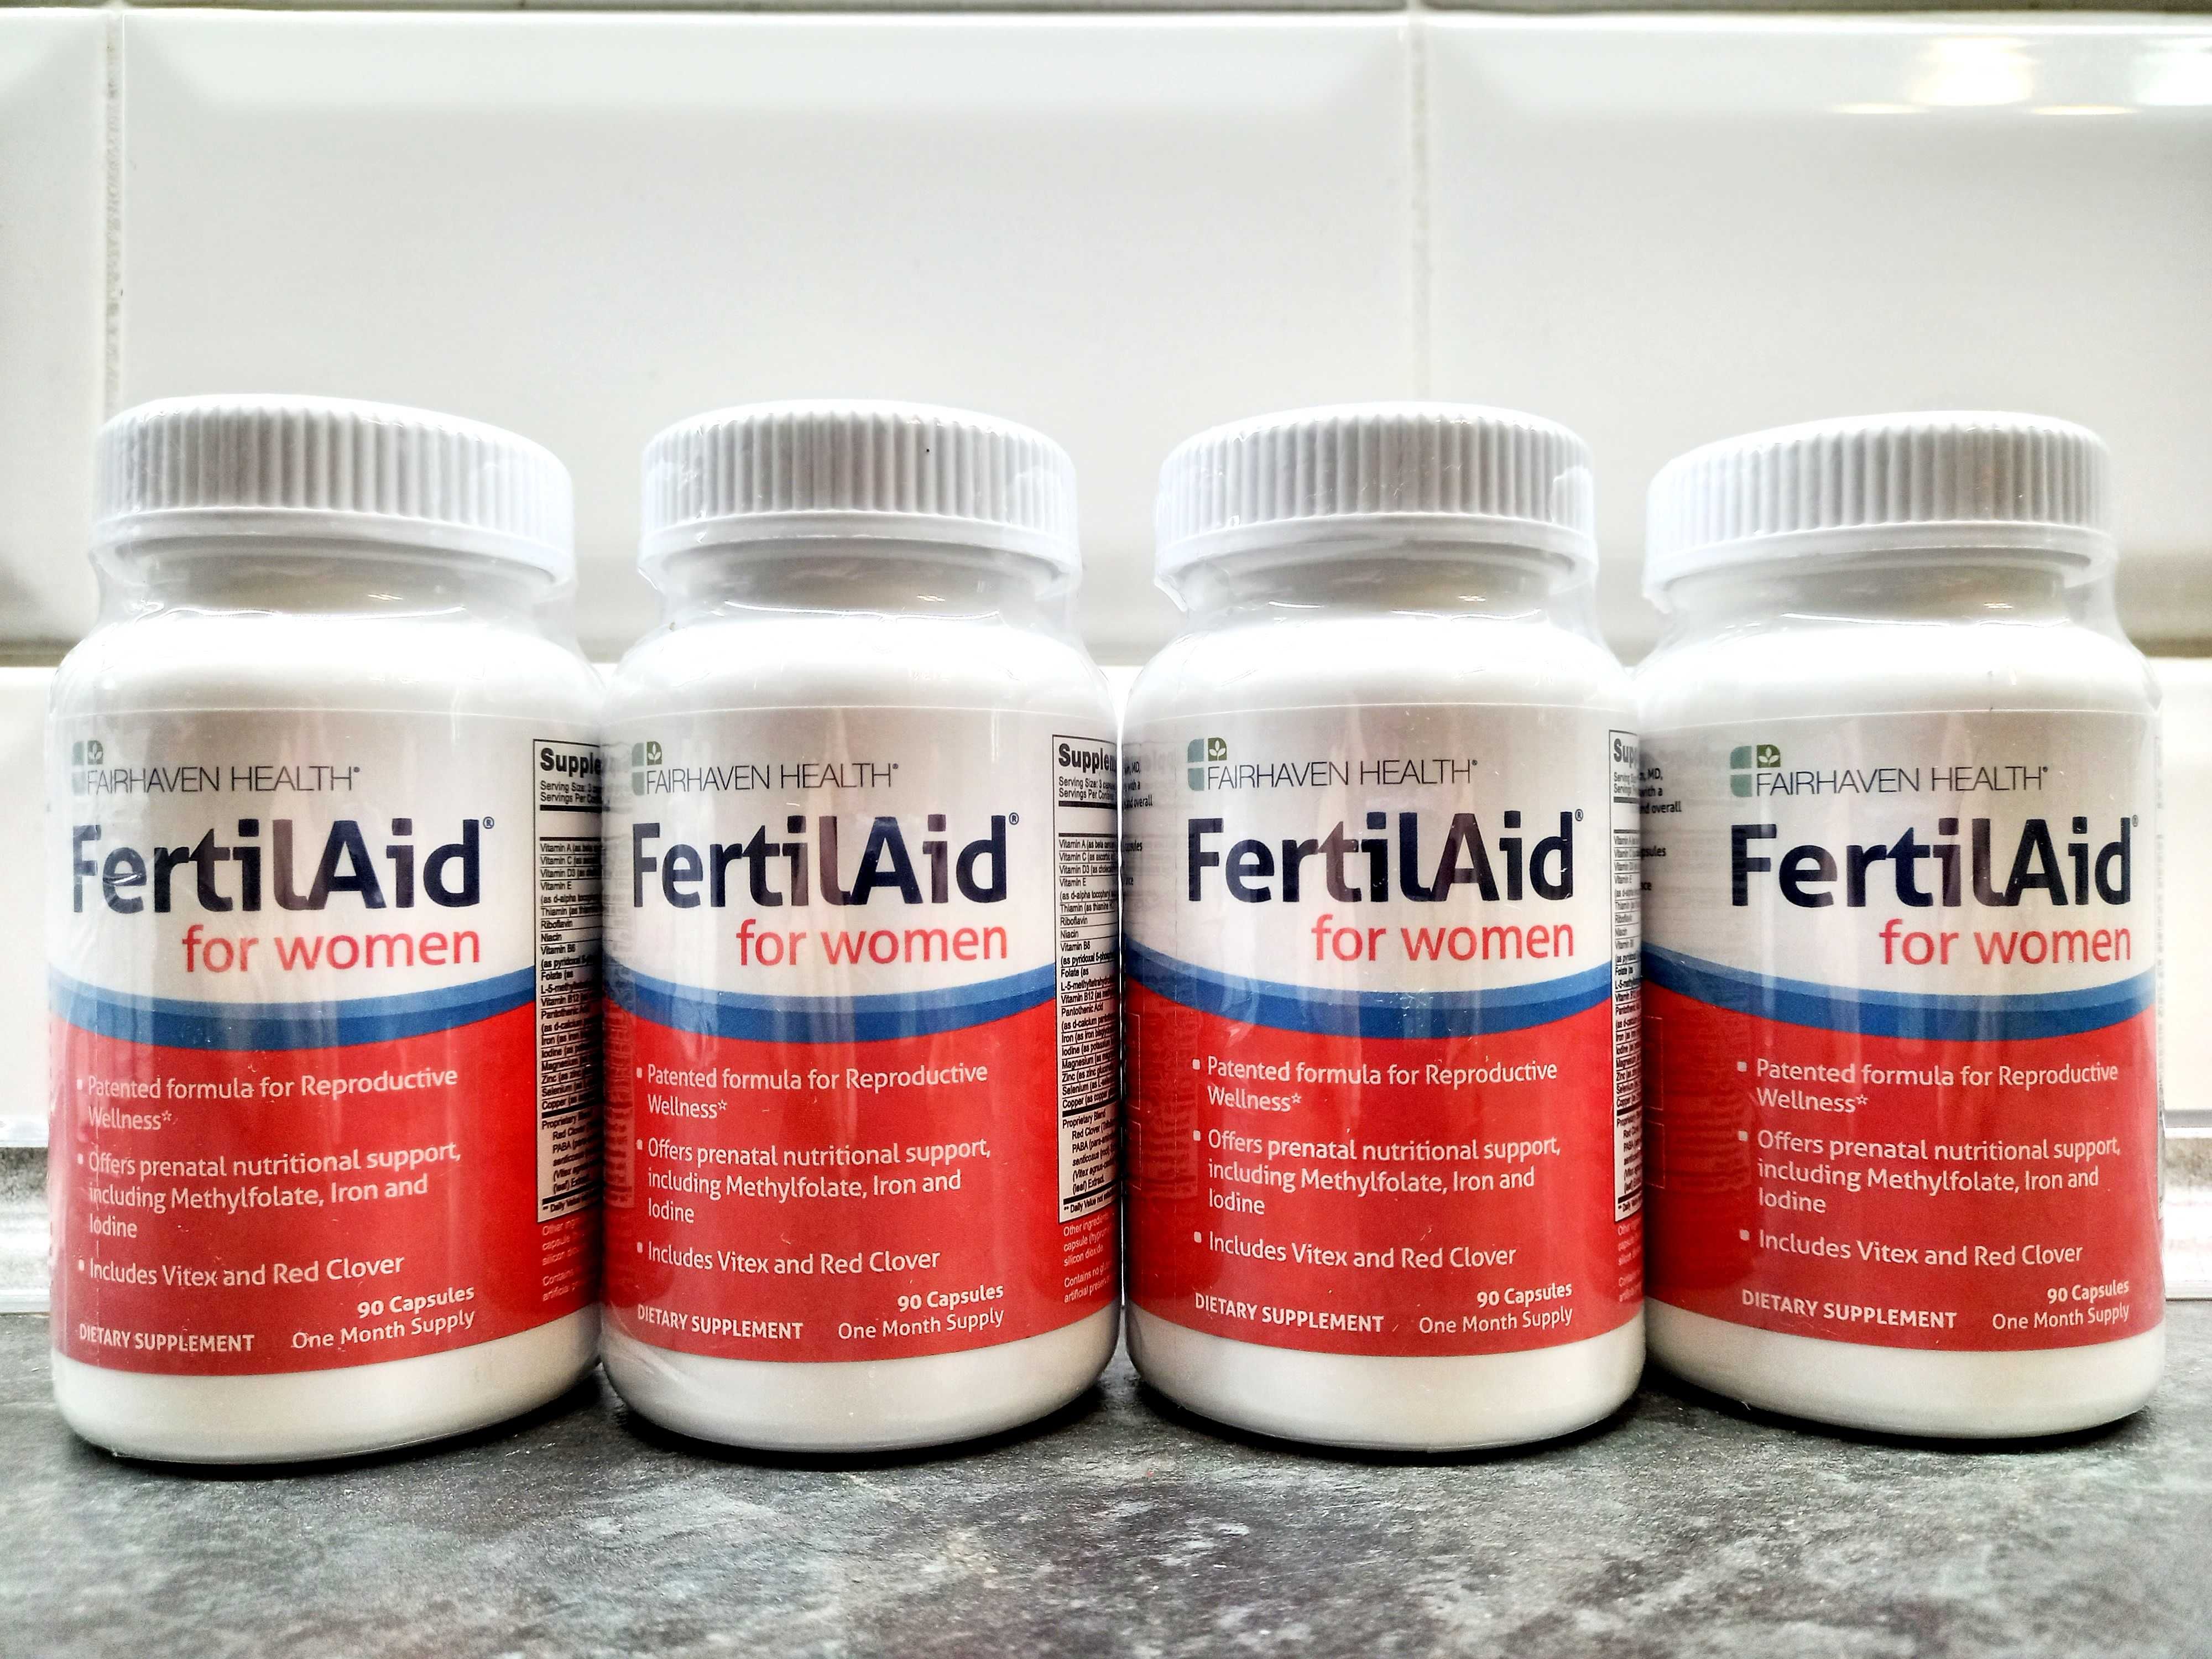 FertilAid for women (90 капс.), женские витамины для фертильности